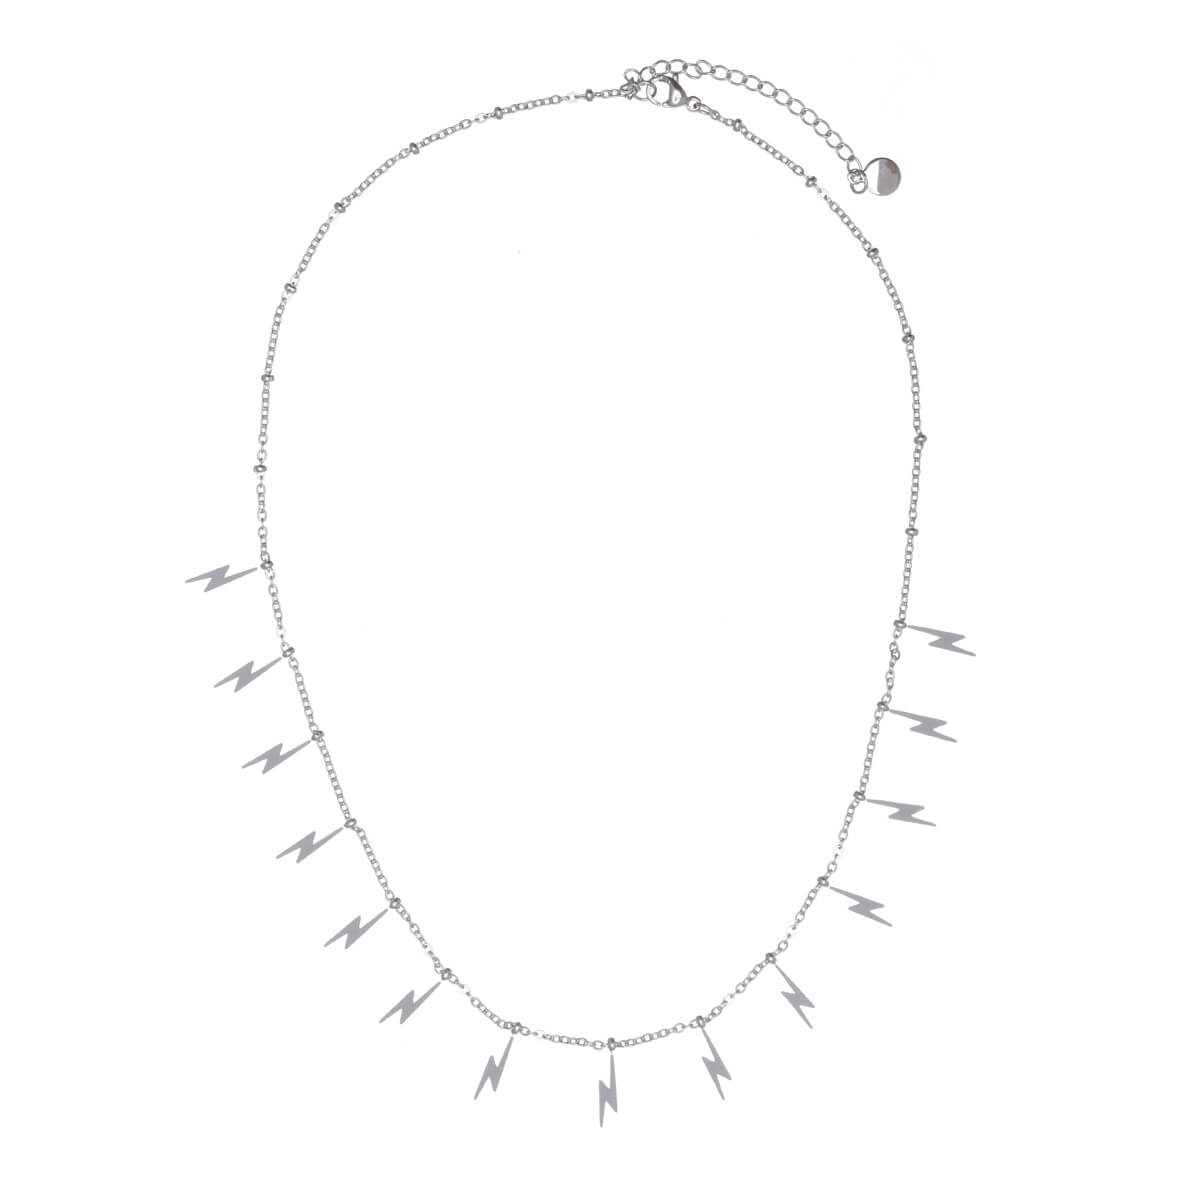 Steel lightning bolt necklace 40cm (steel 316L)